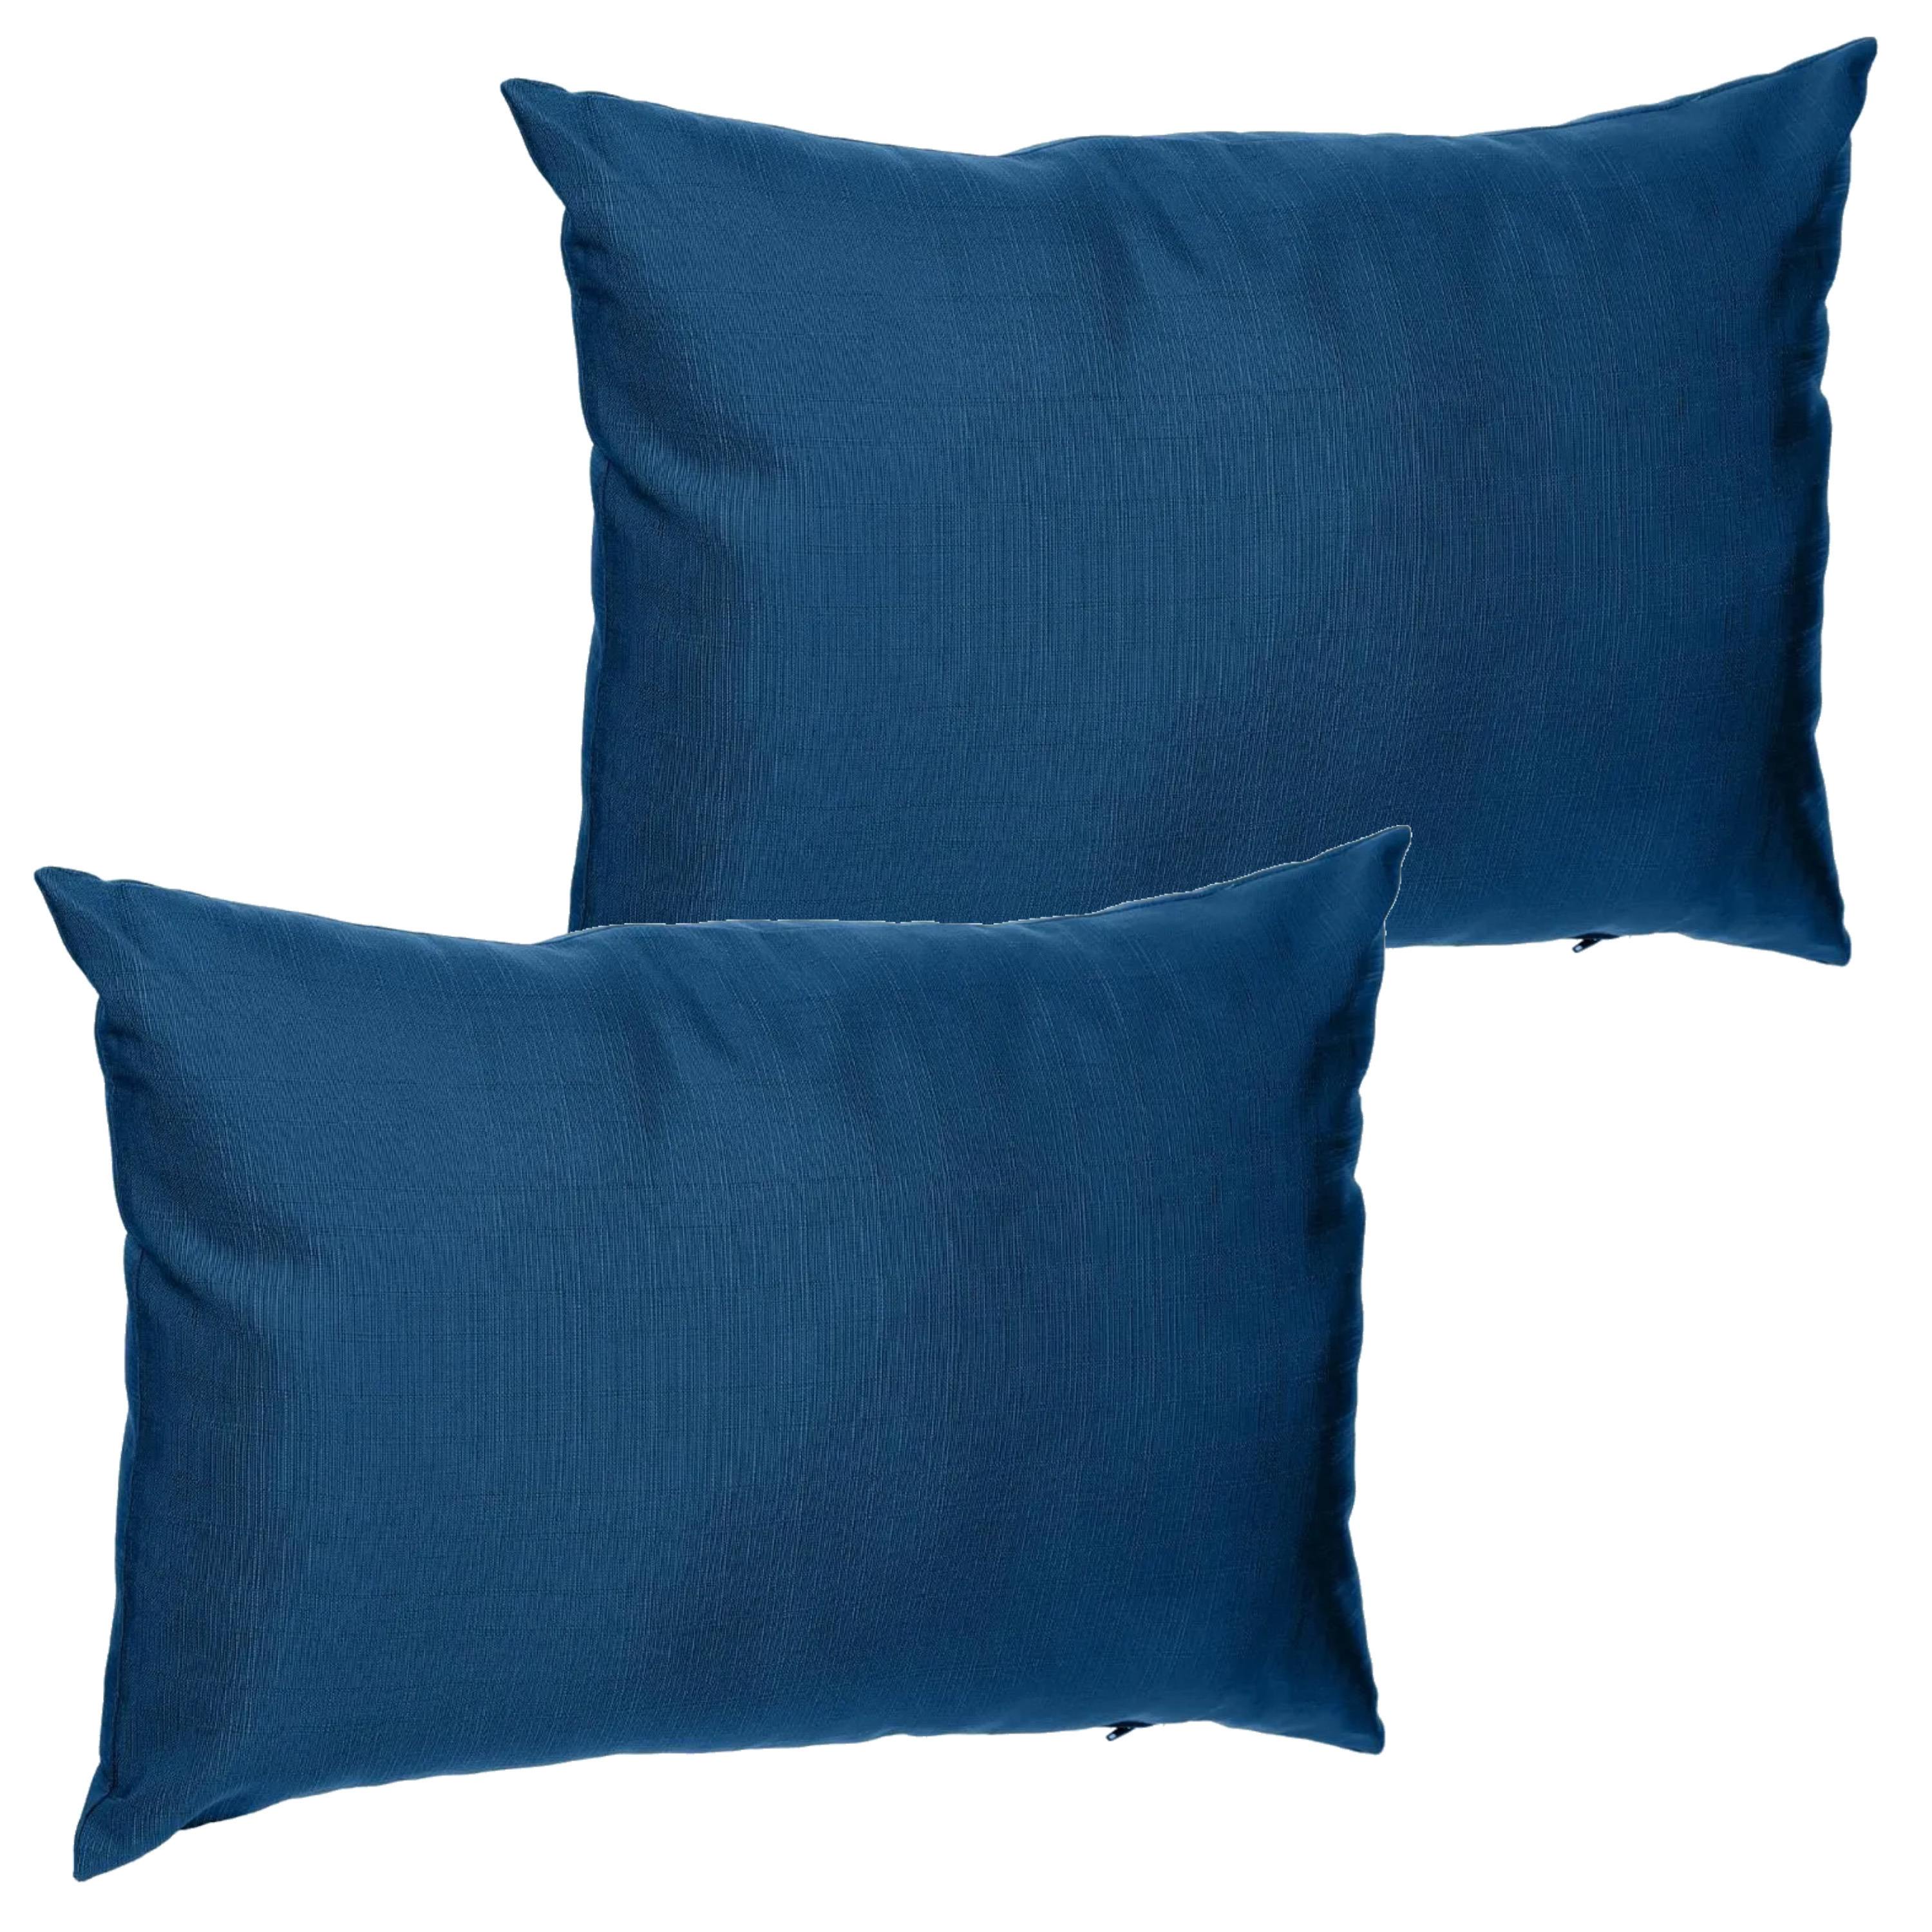 Set van 2x stuks bank-sier-tuin kussens voor binnen en buiten in de kleur indigo blauw 30 x 50 x 10